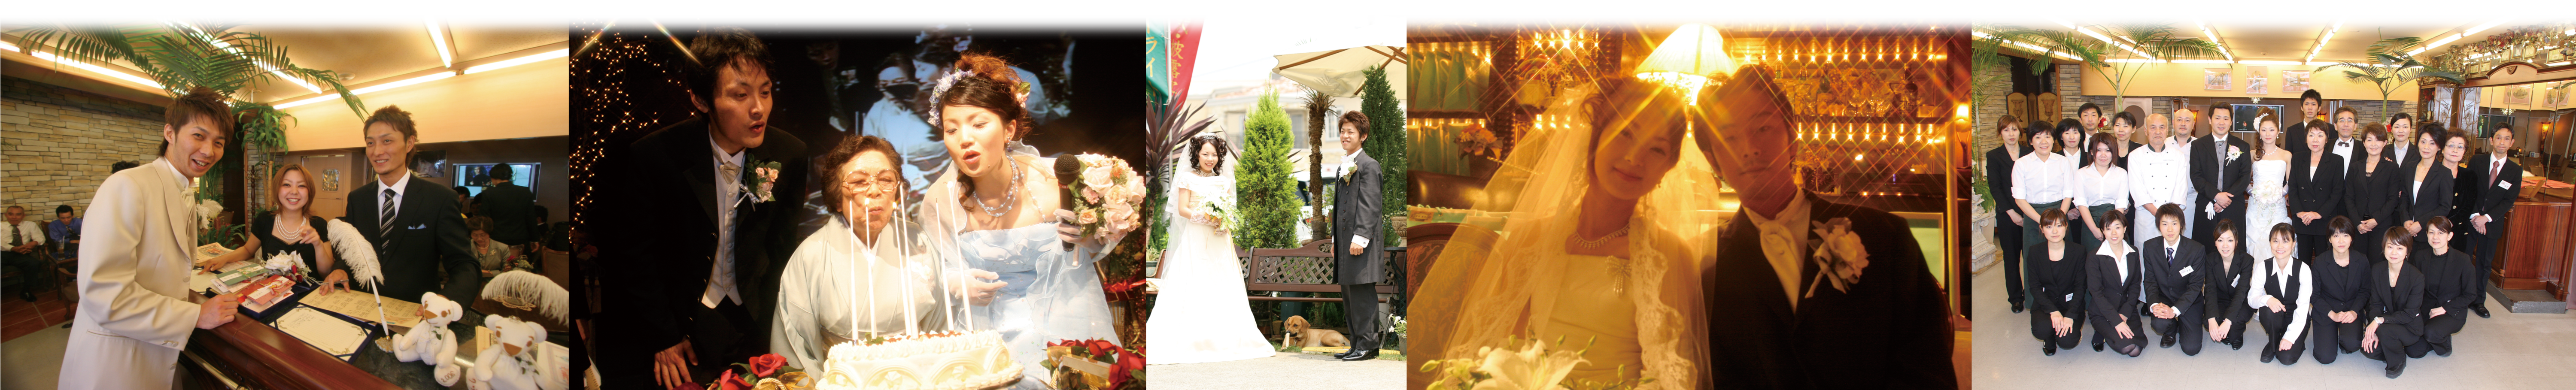 Wedding Collage Photos